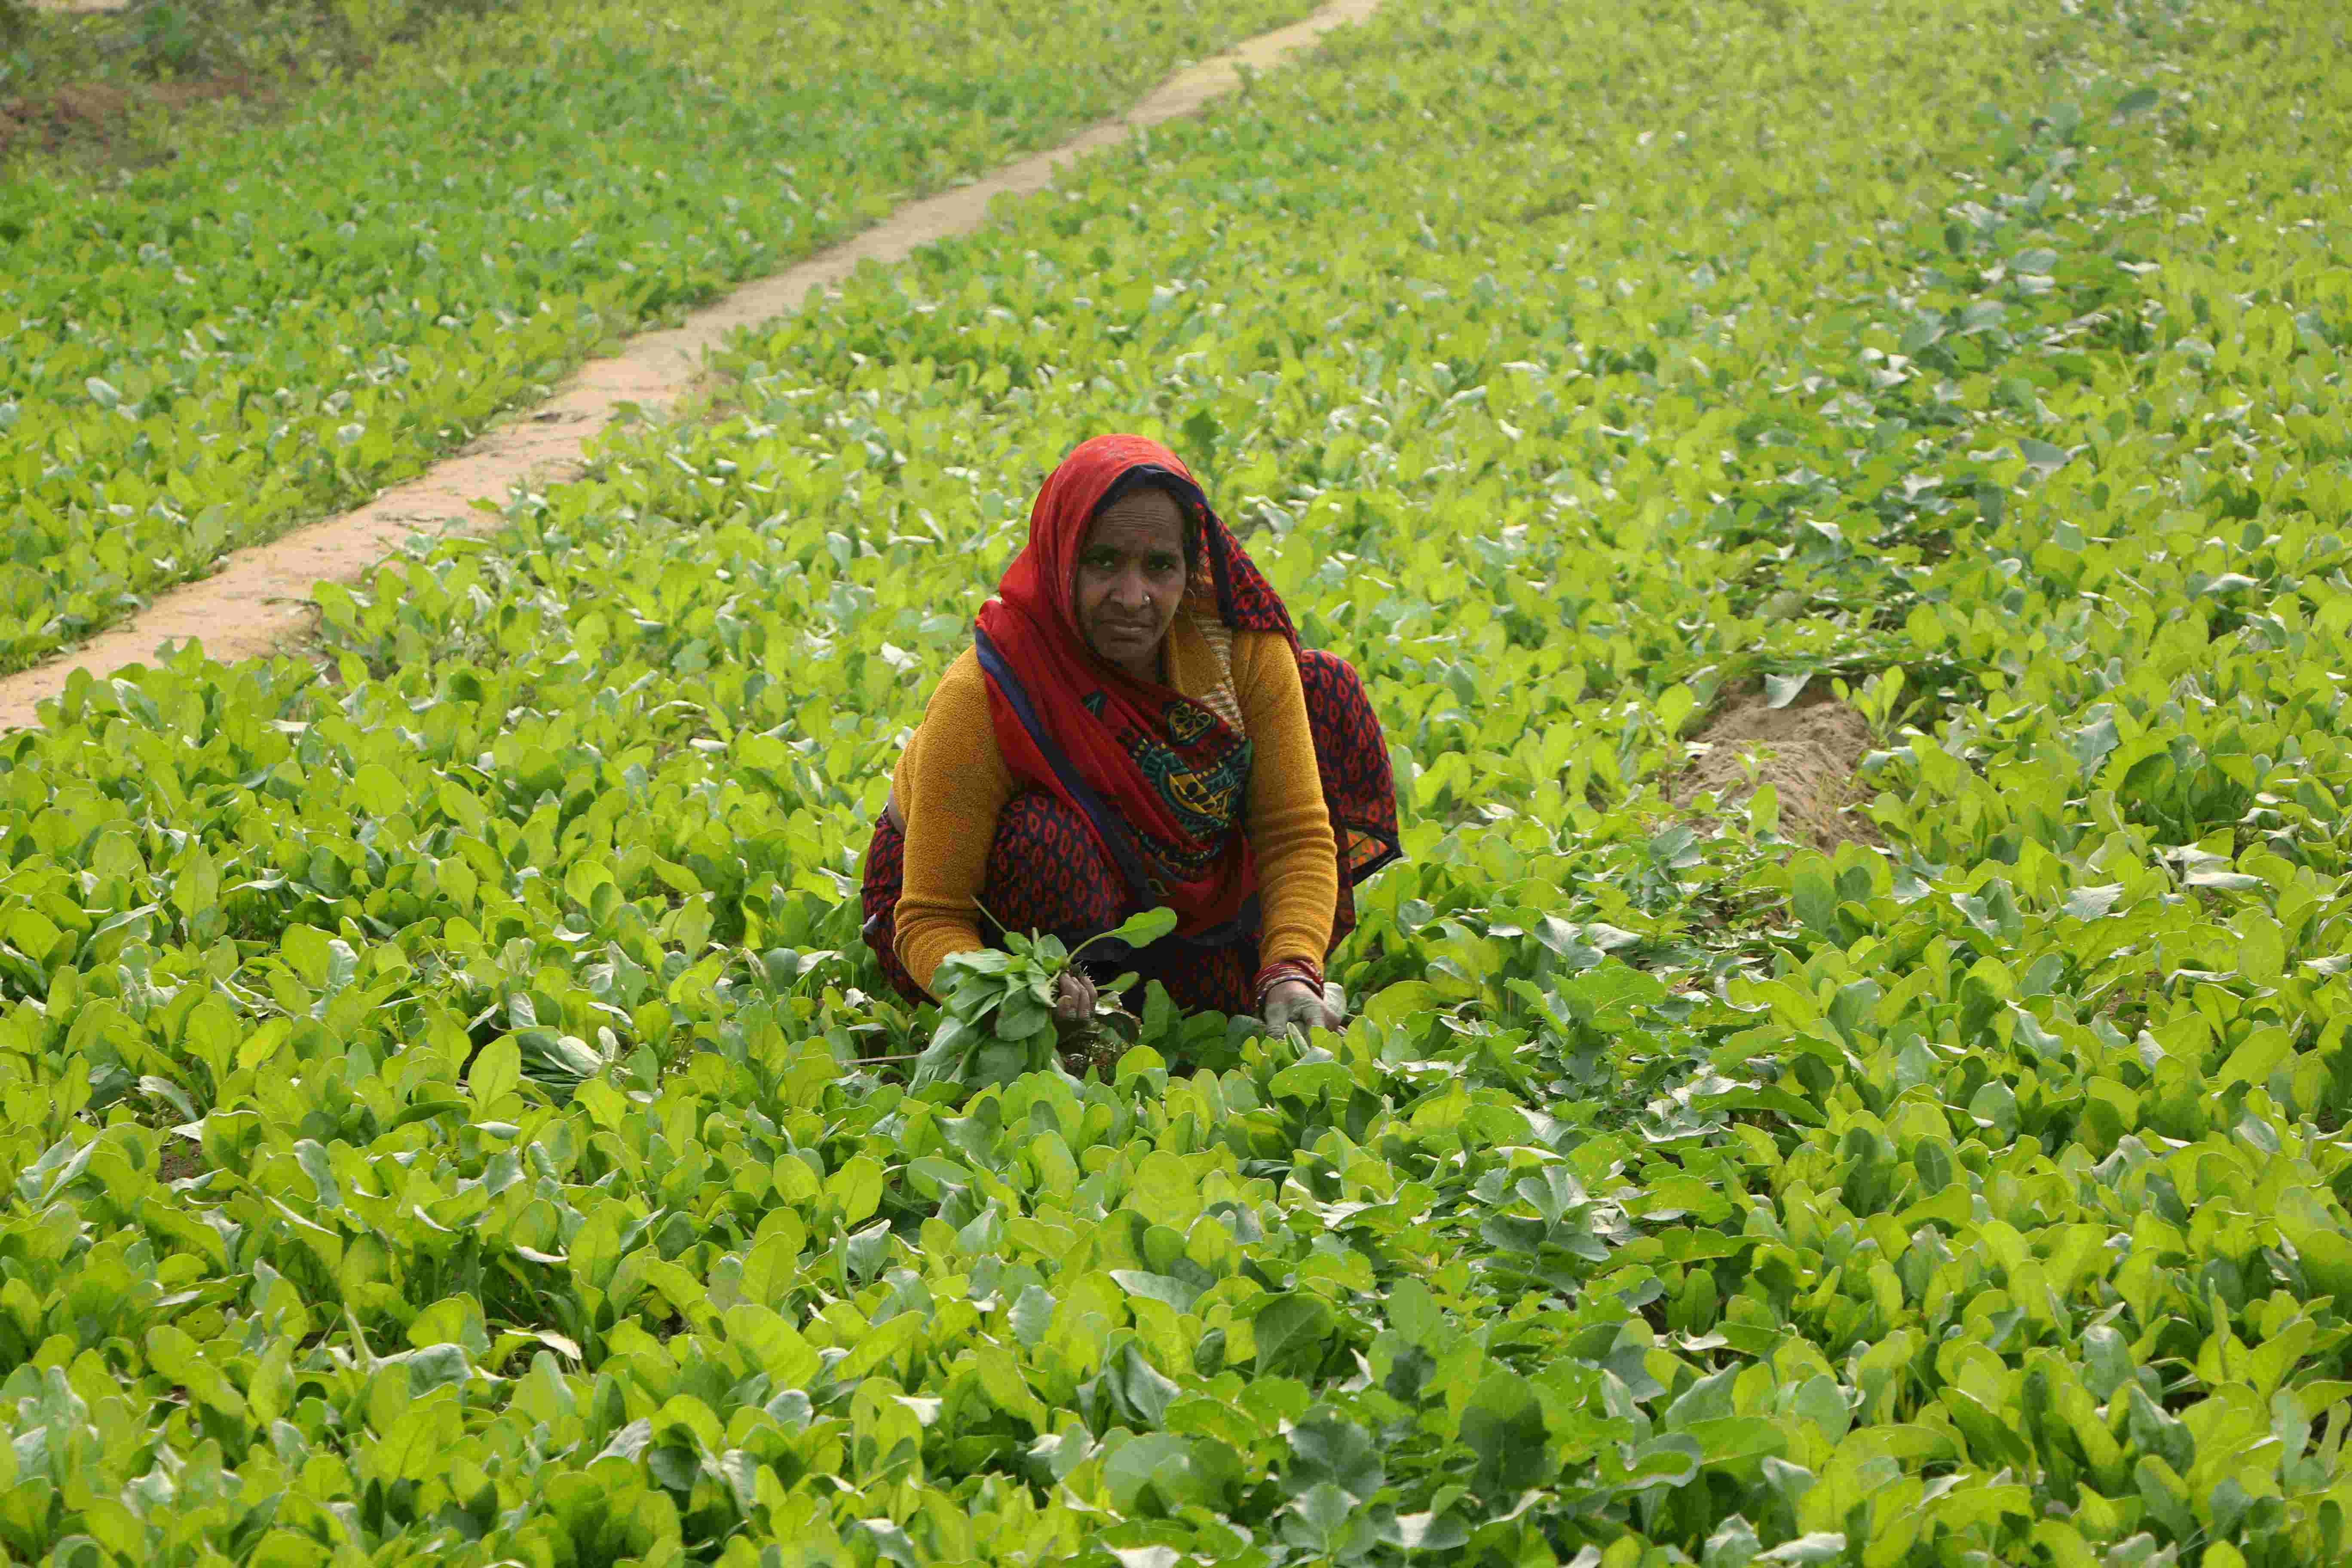 खेती-बाड़ी के कामों में महिलाएं सबसे आगे, फिर भी बराबरी का अधिकार नहीं